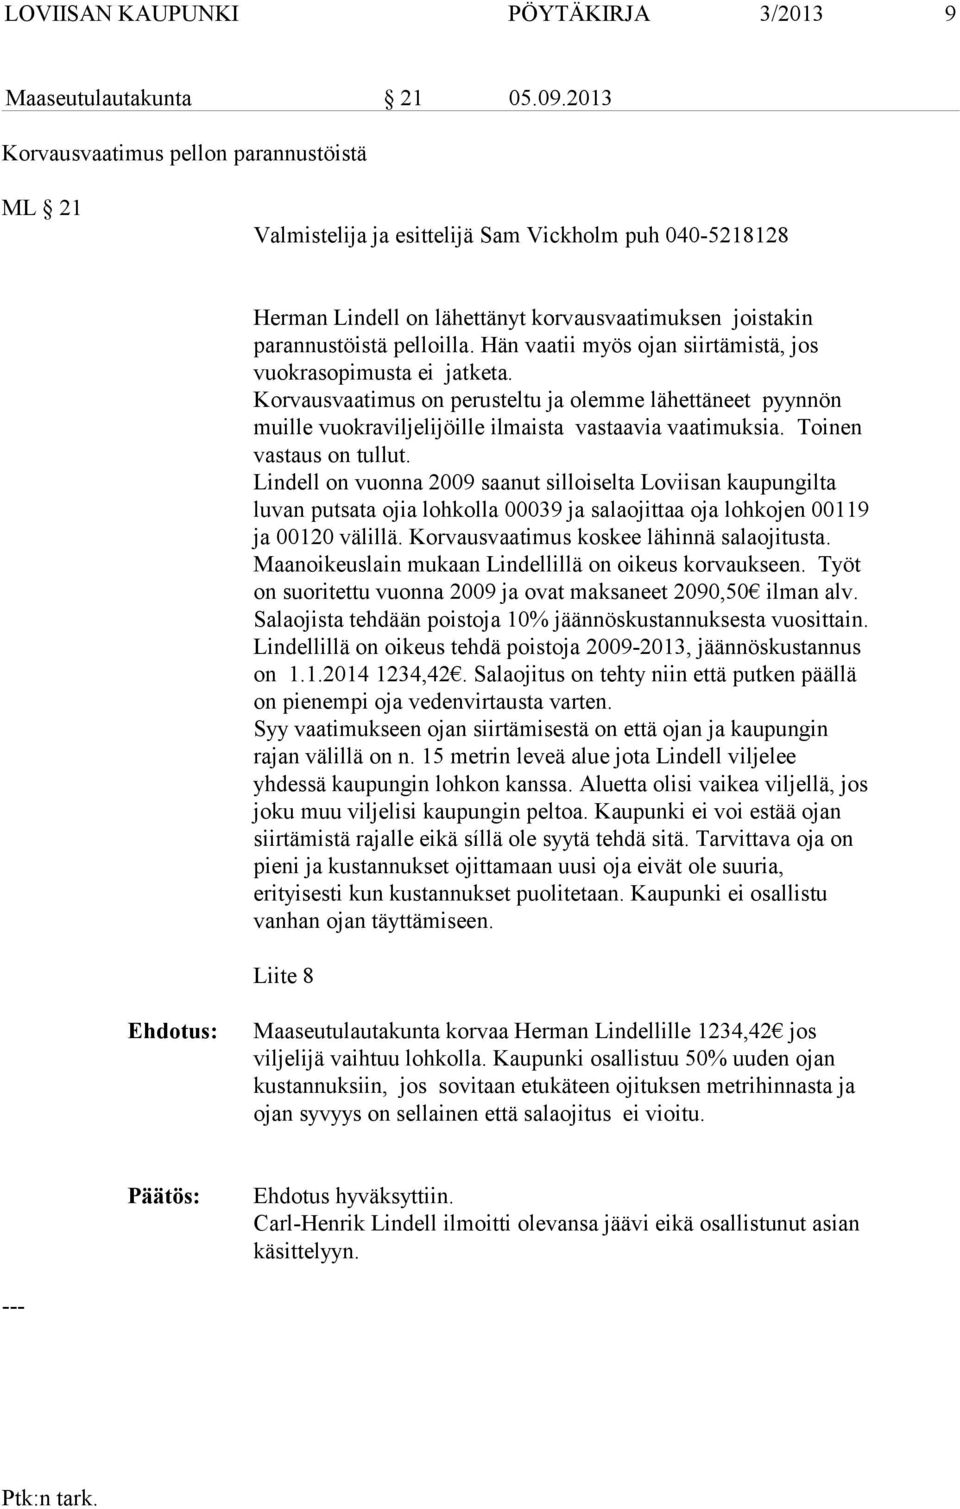 Toinen vastaus on tullut. Lindell on vuonna 2009 saanut silloiselta Loviisan kaupungilta luvan putsata ojia lohkolla 00039 ja salaojittaa oja lohkojen 00119 ja 00120 välillä.